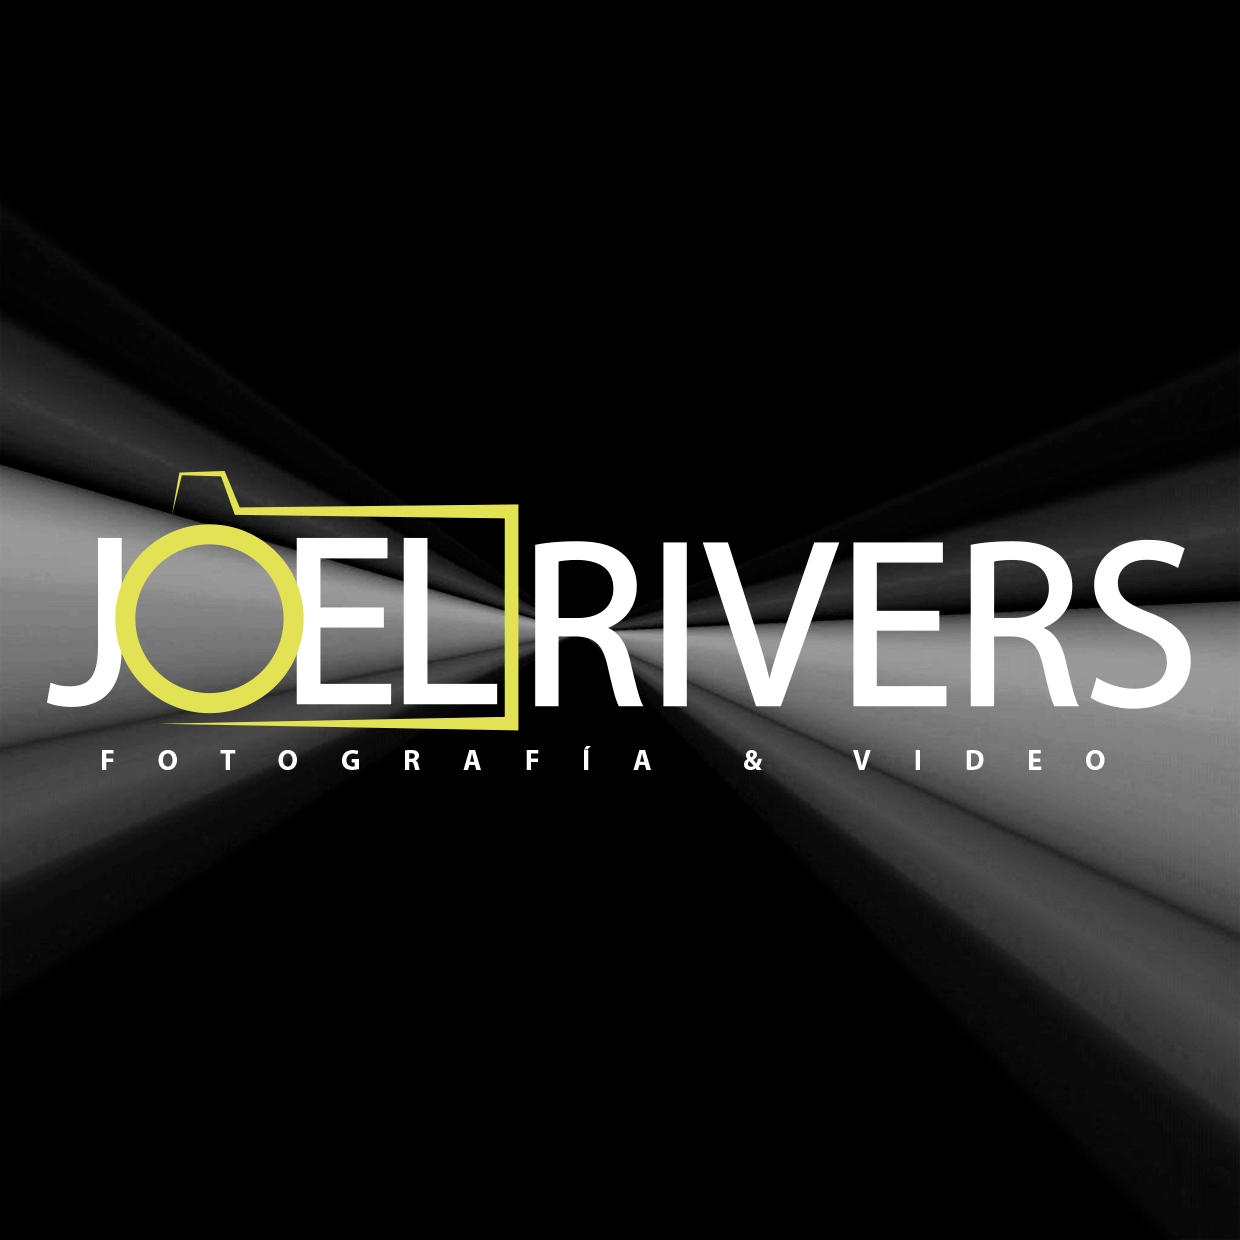 FOTOGRAFÍA Y DRONE/ DRONE JOEL RIVERS